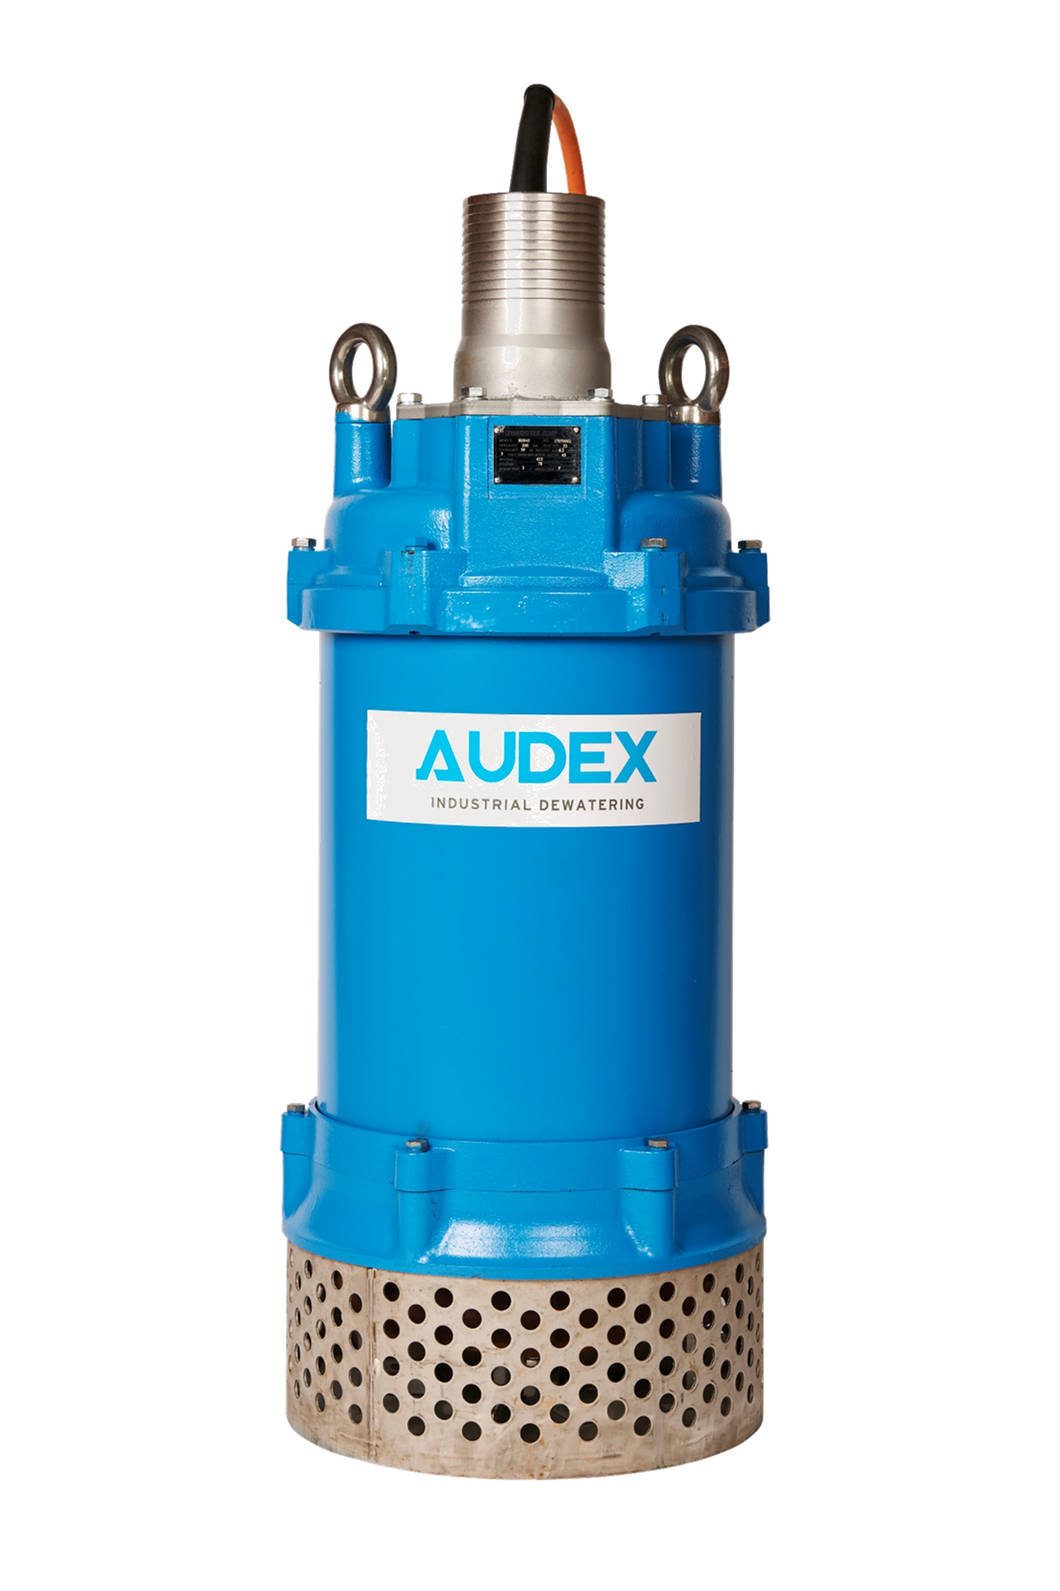 AUDEX AS SERIES dewatering pump